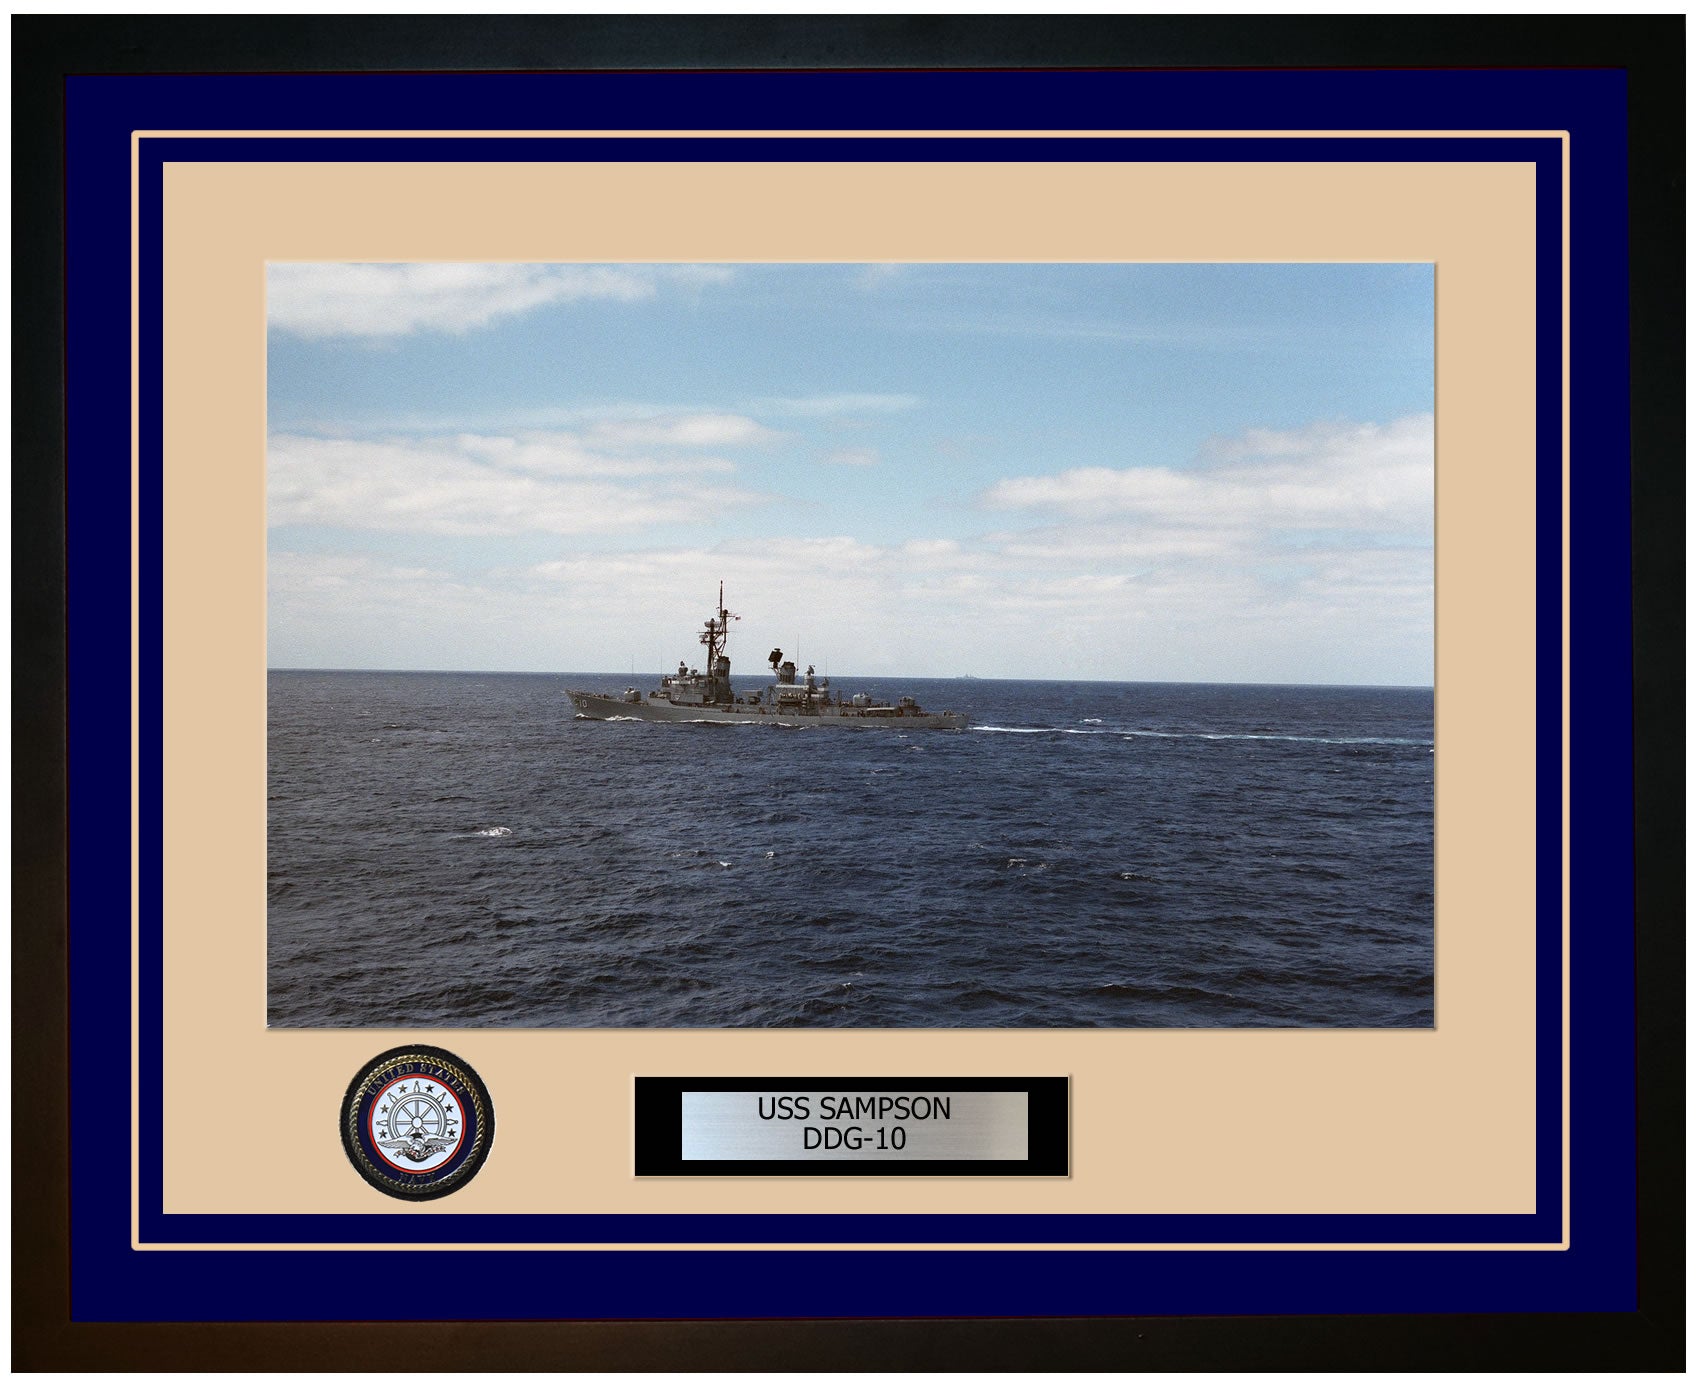 USS SAMPSON DDG-10 Framed Navy Ship Photo Blue